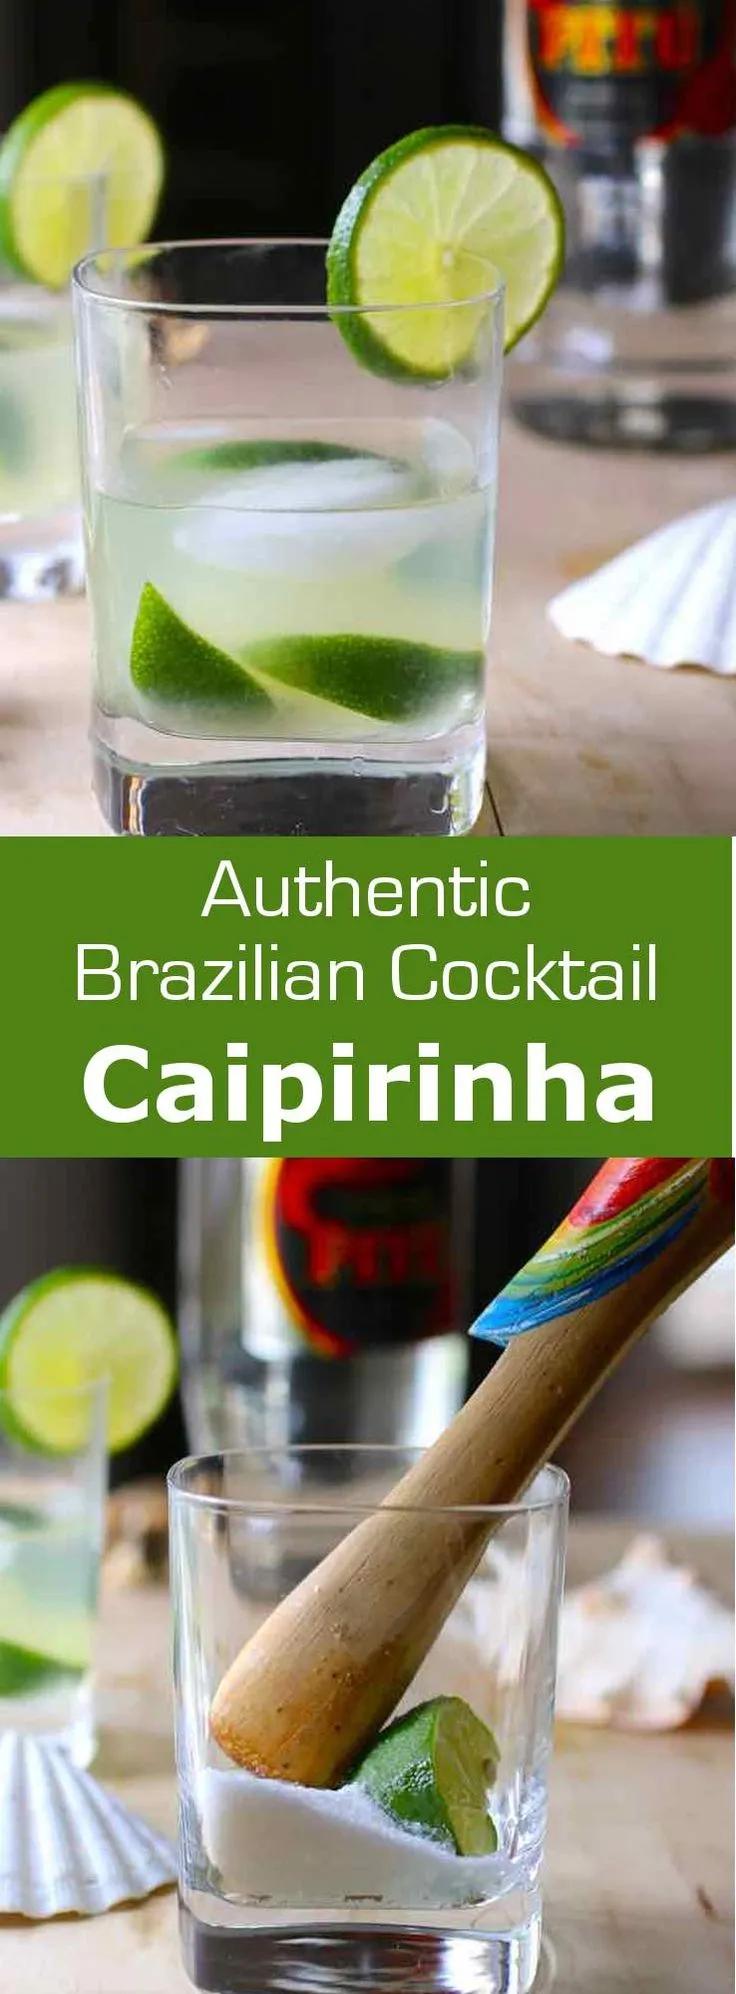 Caipirinha - Authentic Brazilian Recipe | 196 flavors | Caipirinha ...